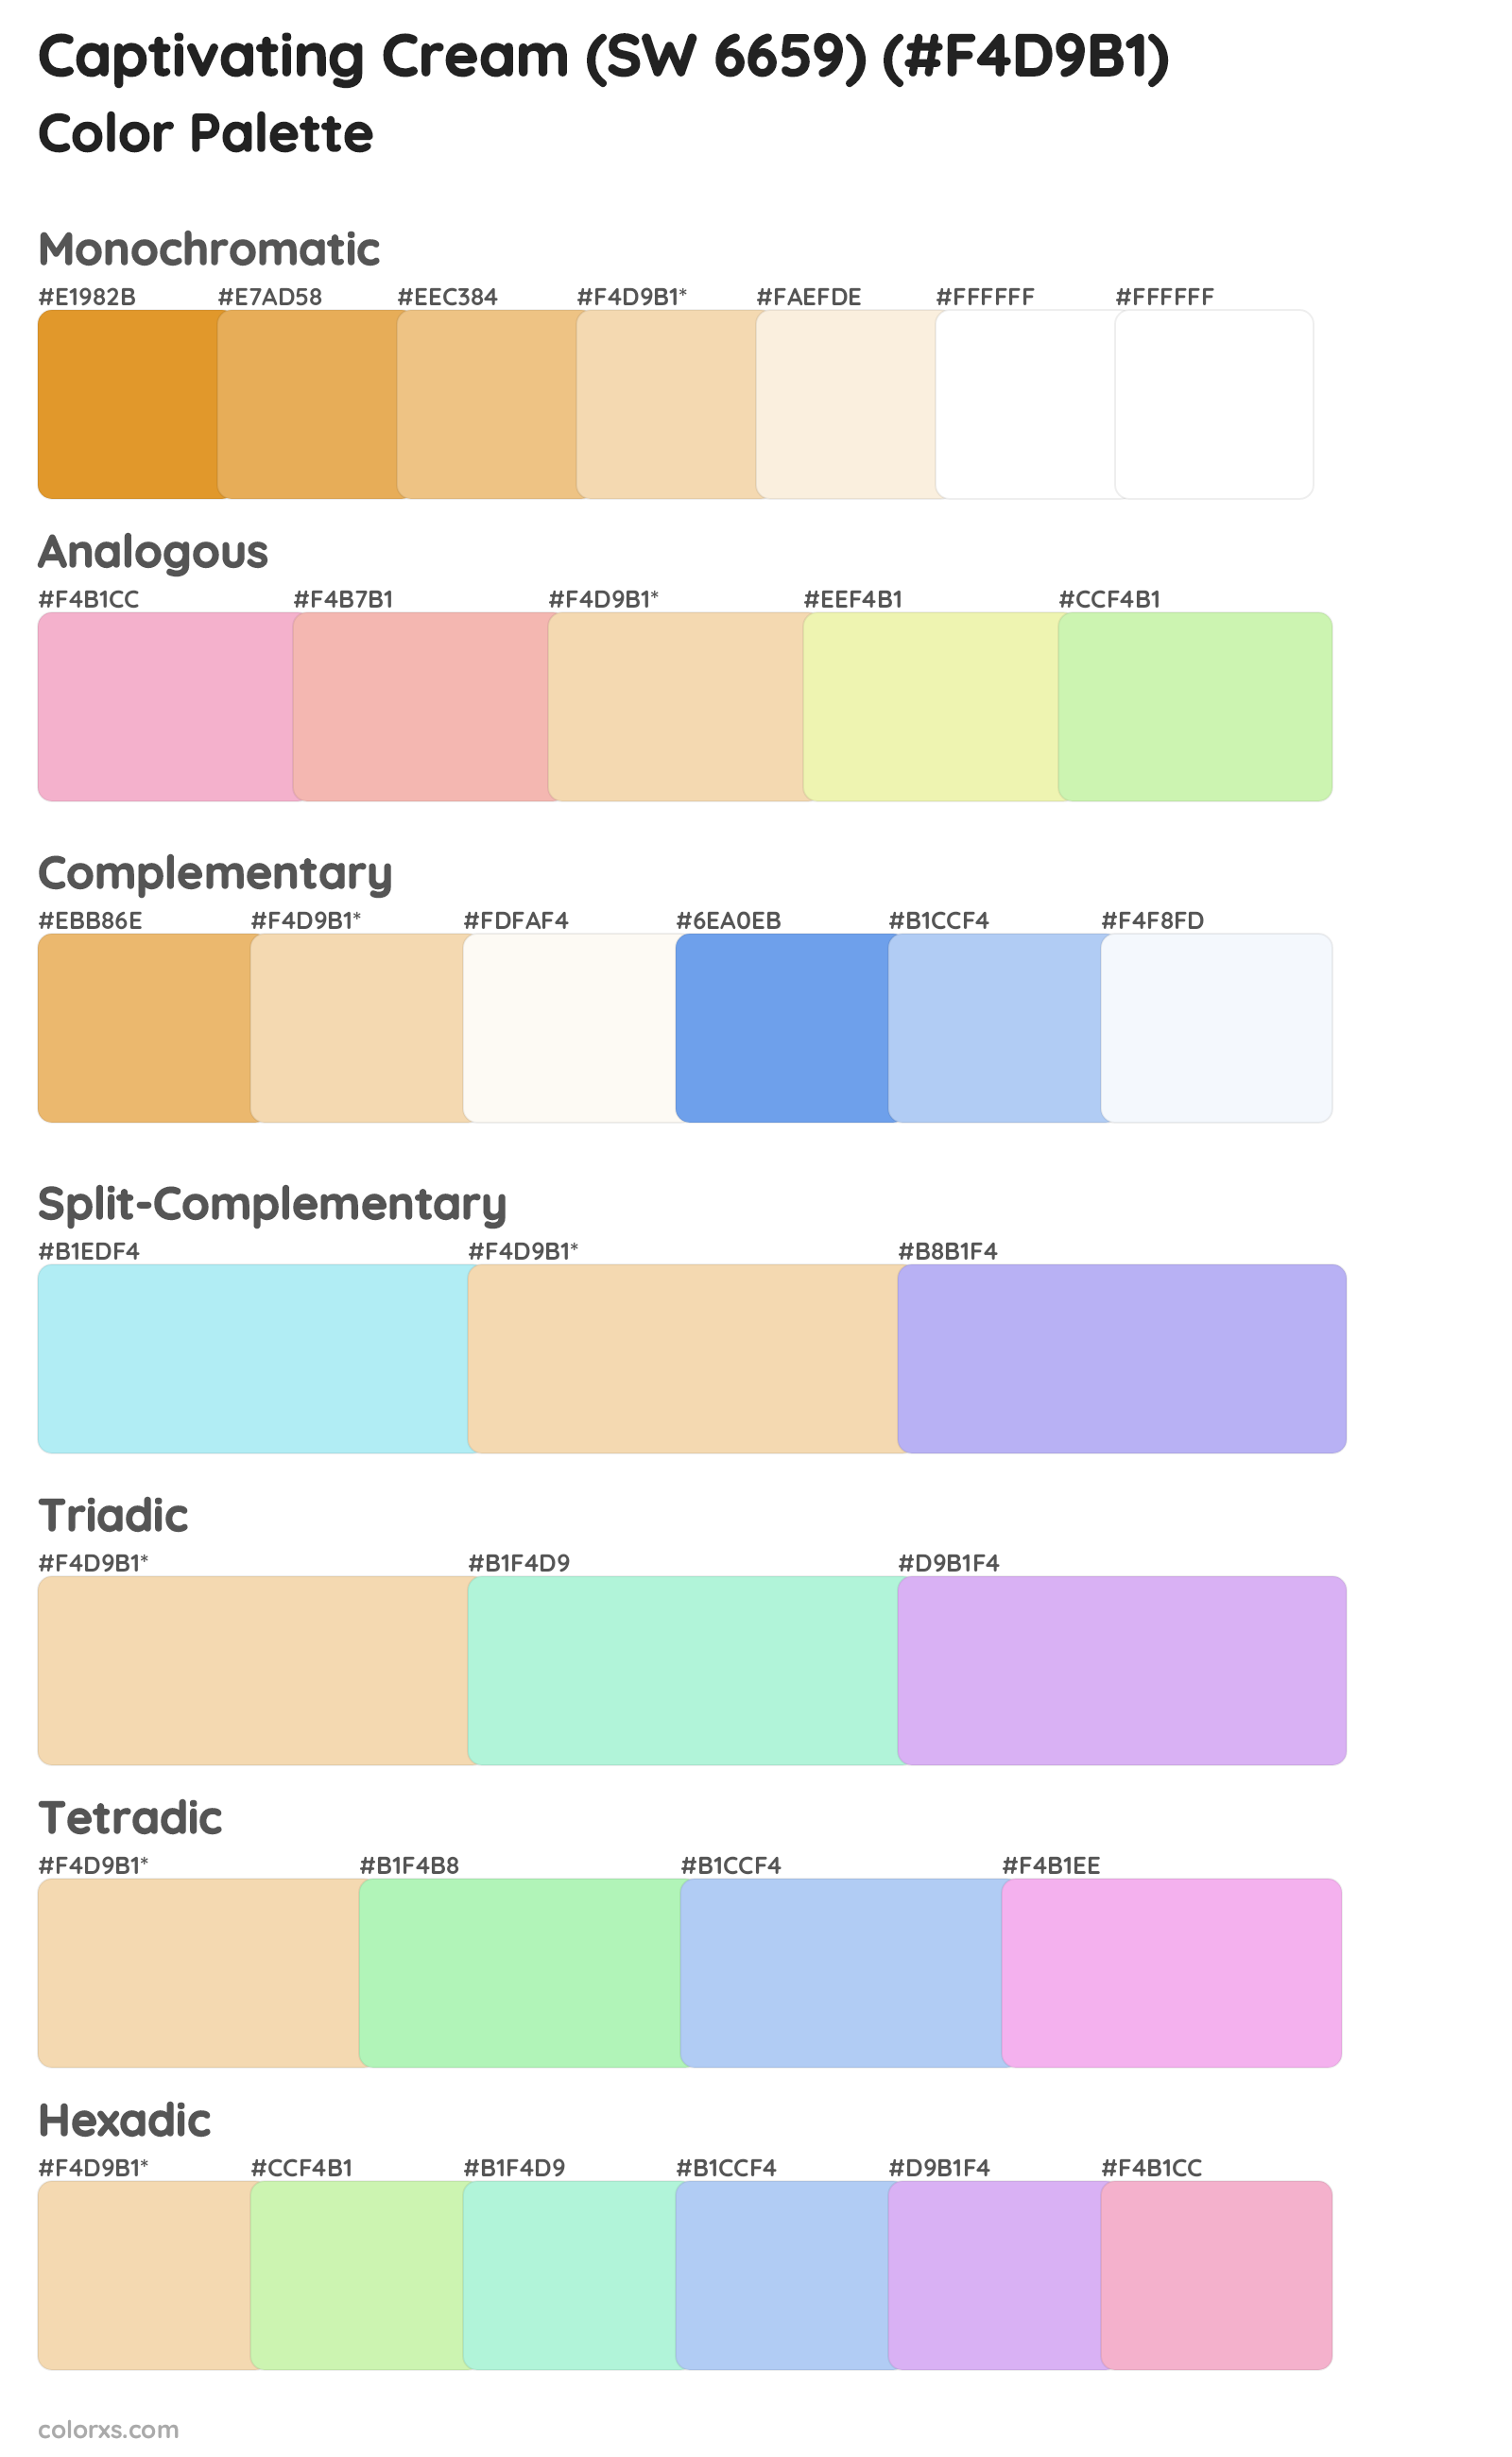 Captivating Cream (SW 6659) Color Scheme Palettes